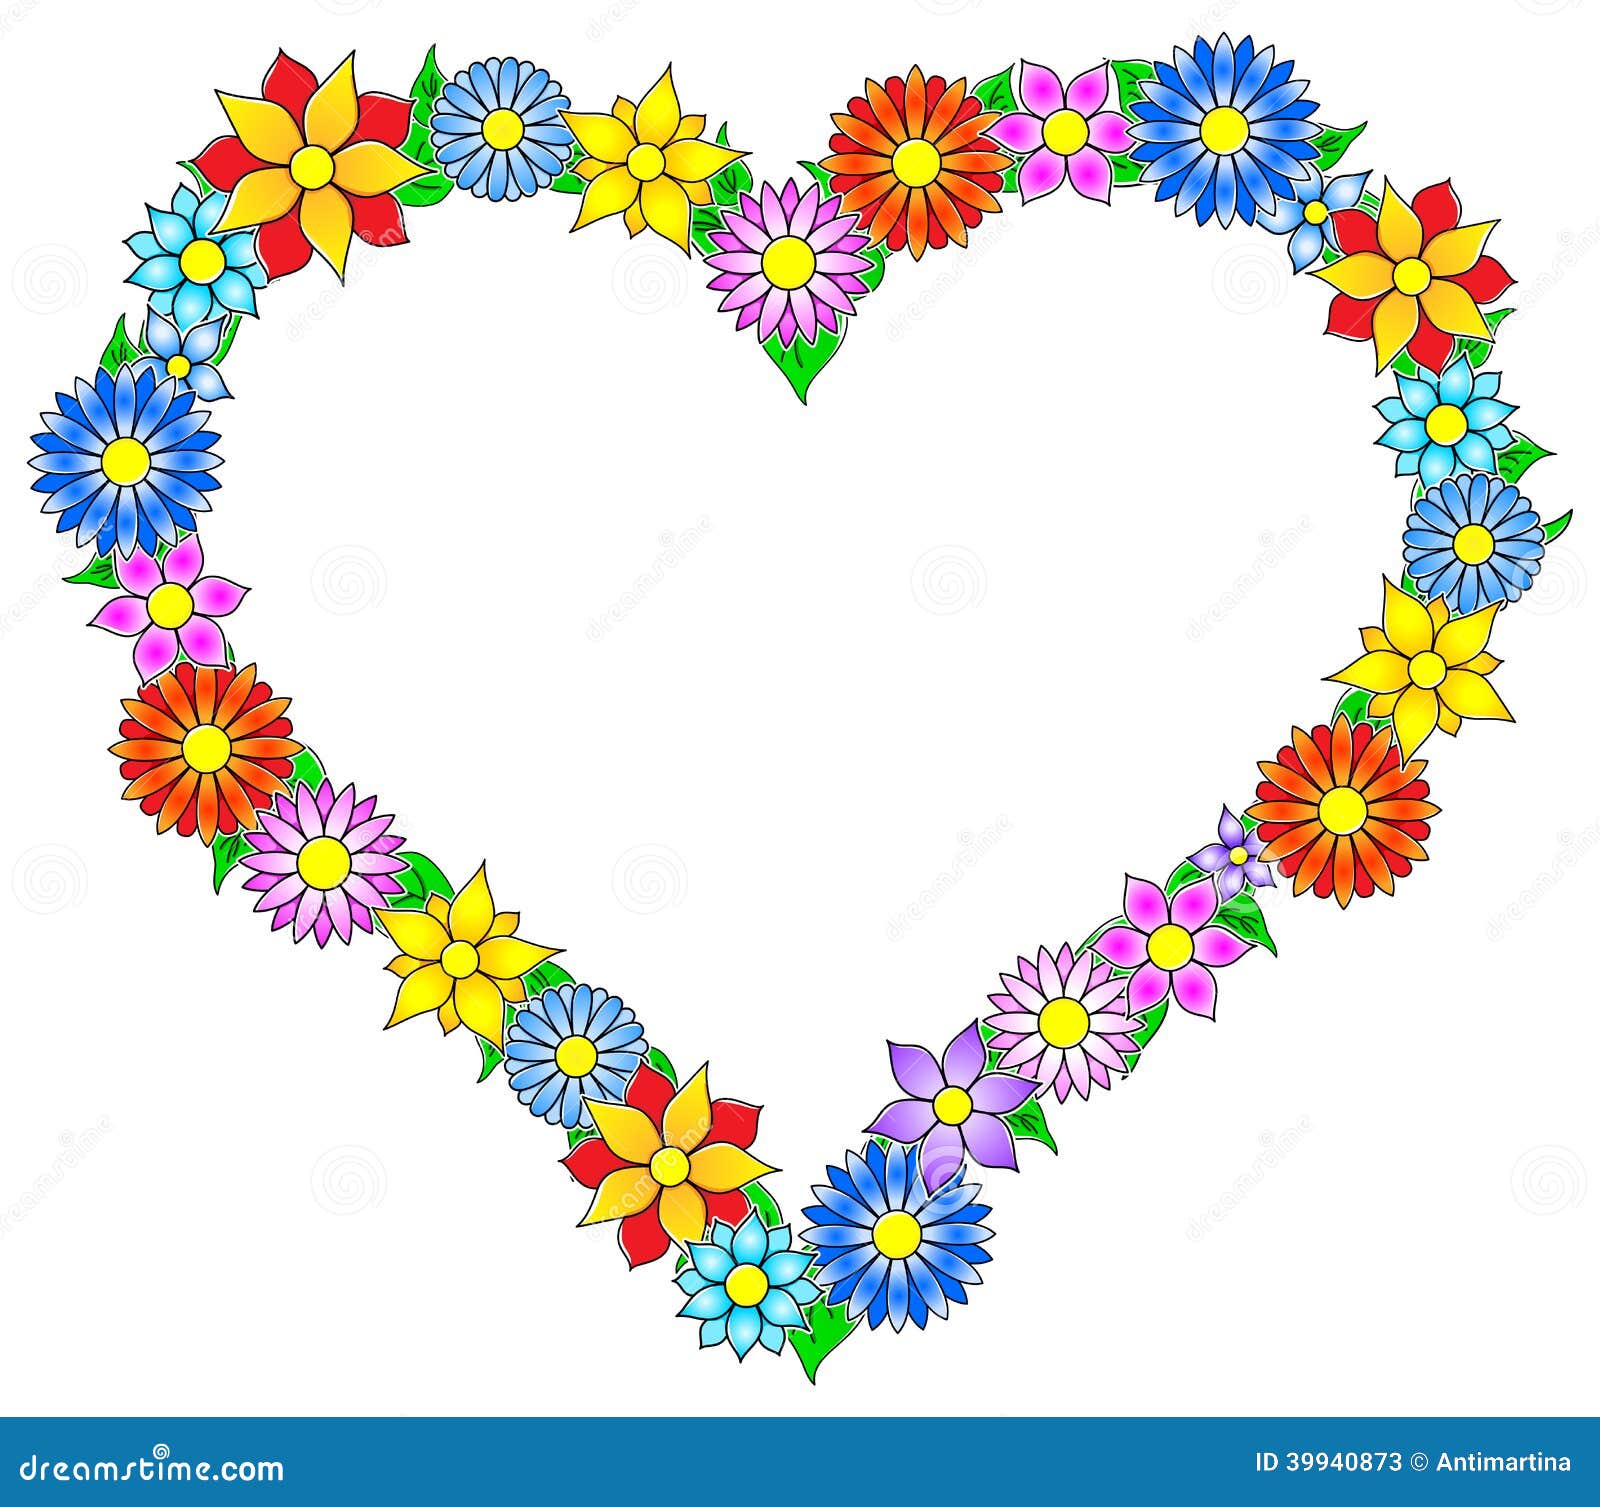 Download Flower border heart stock vector. Illustration of blank - 39940873